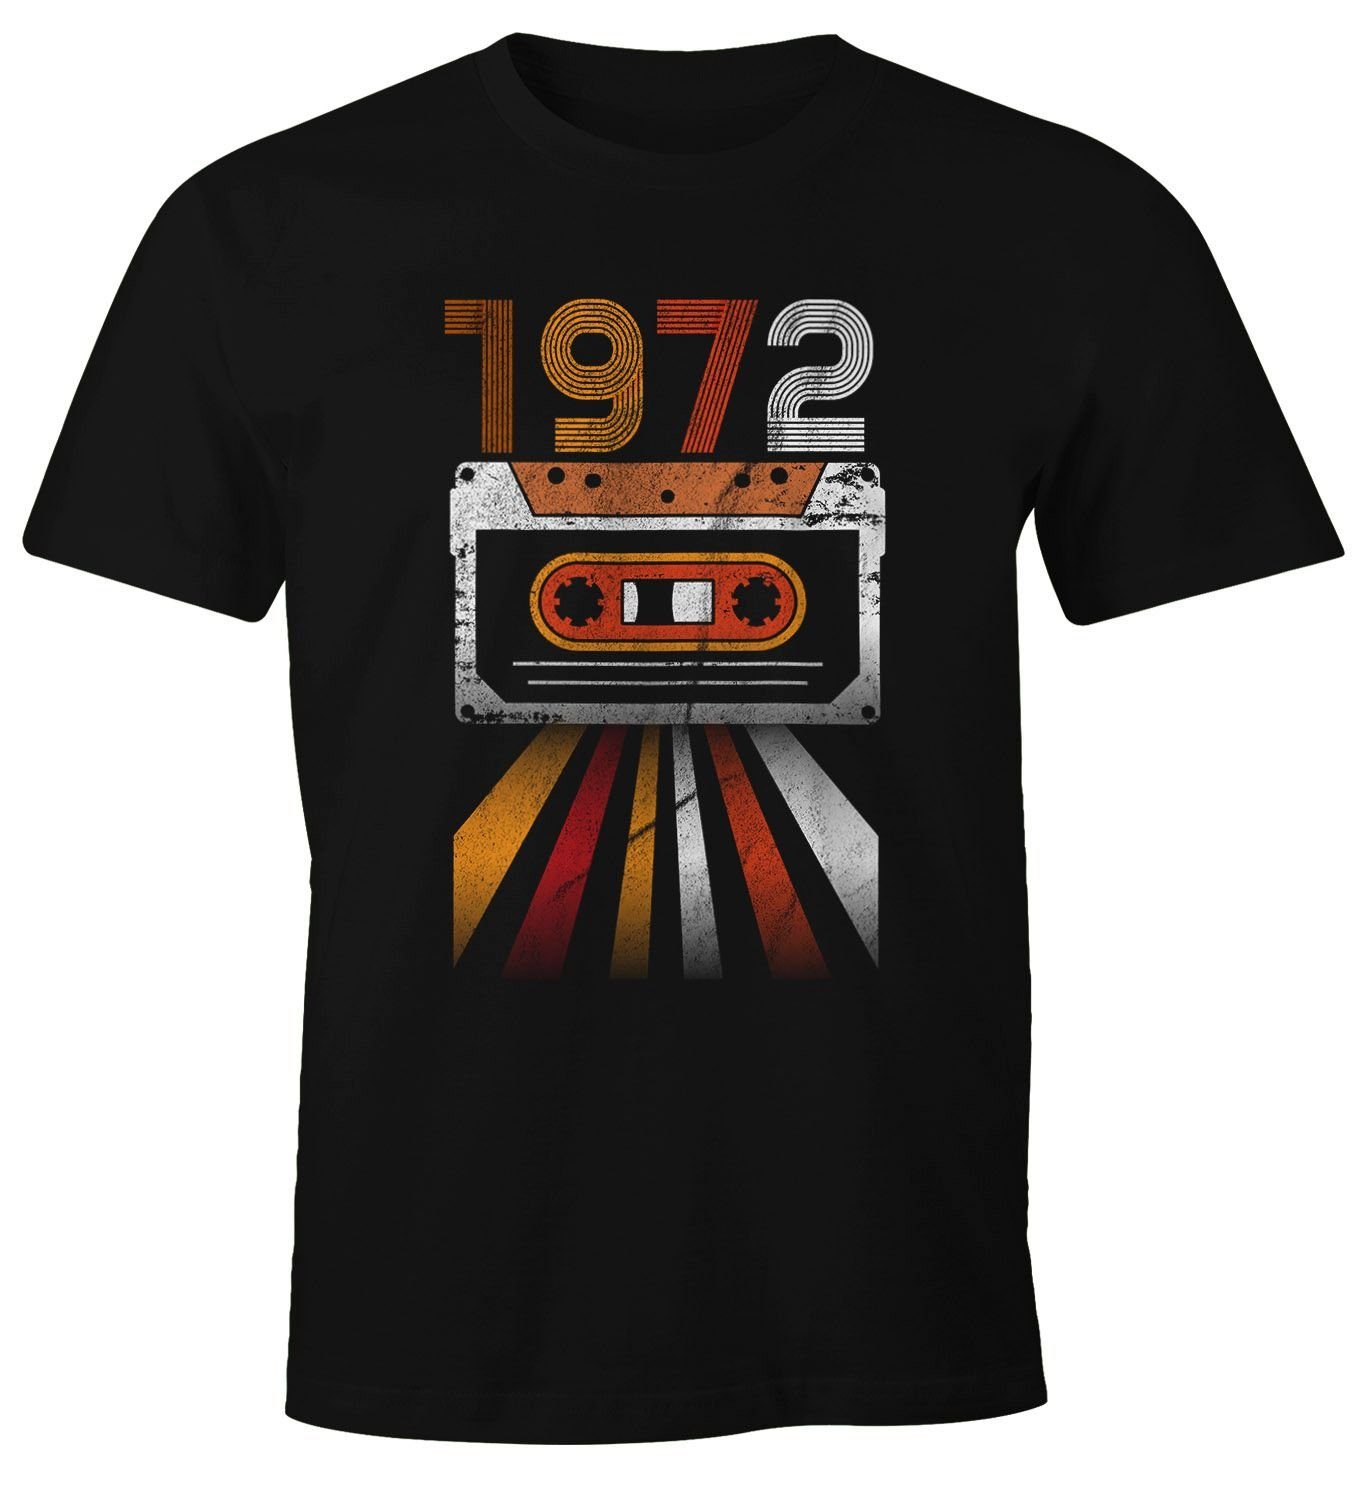 MoonWorks Print-Shirt Herren T-Shirt mit 70er Print Geschenk-Shirt 1972 Jahre Siebziger Geburtstag Retro Vintage schwarz Moonworks®